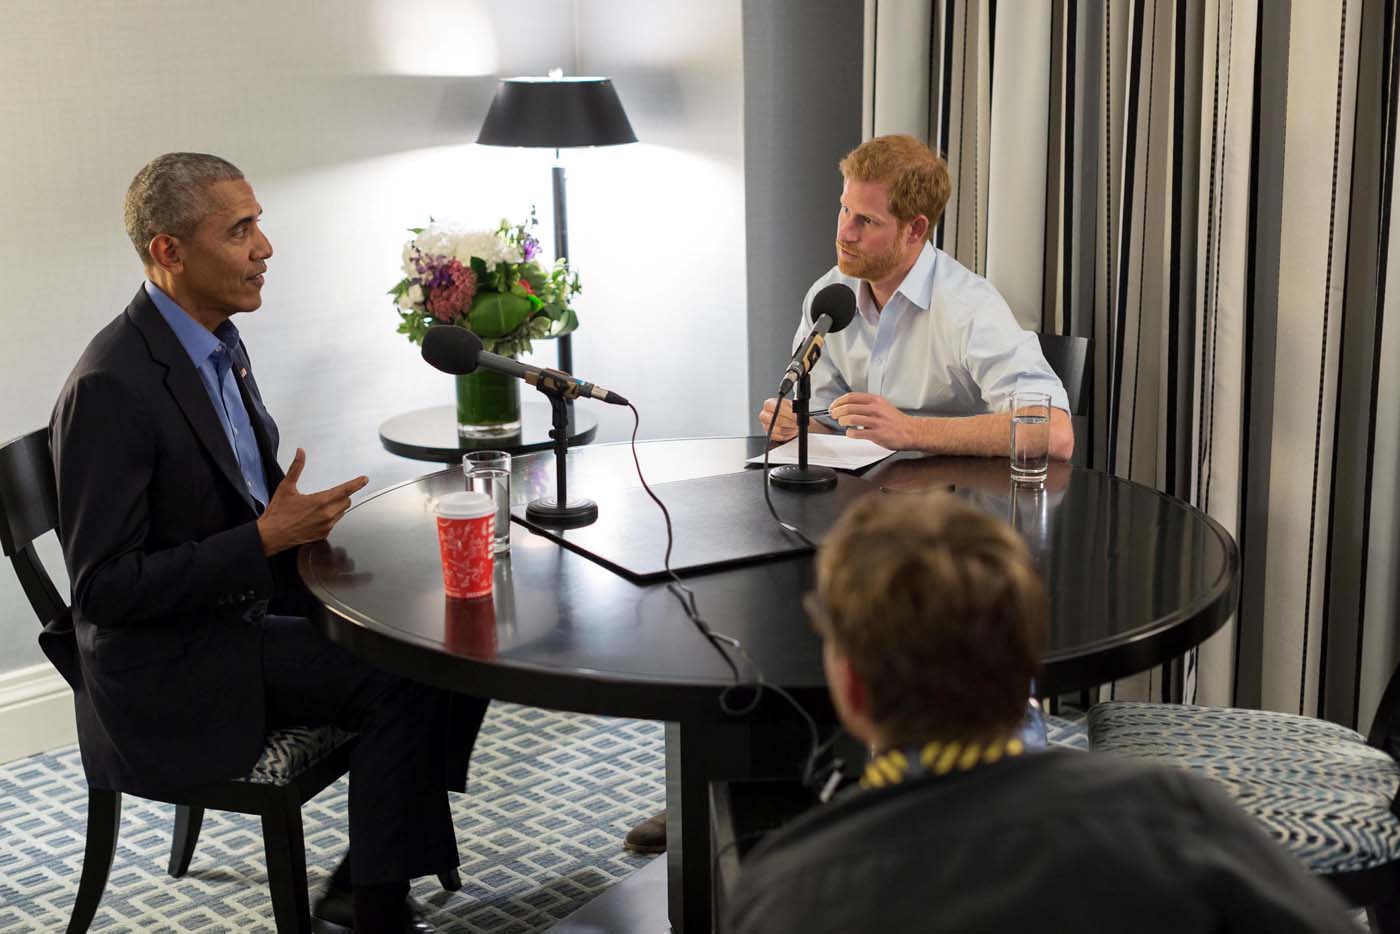 Obama alerta sobre uso irresponsable de las redes sociales al ser entrevistado por el príncipe Harry